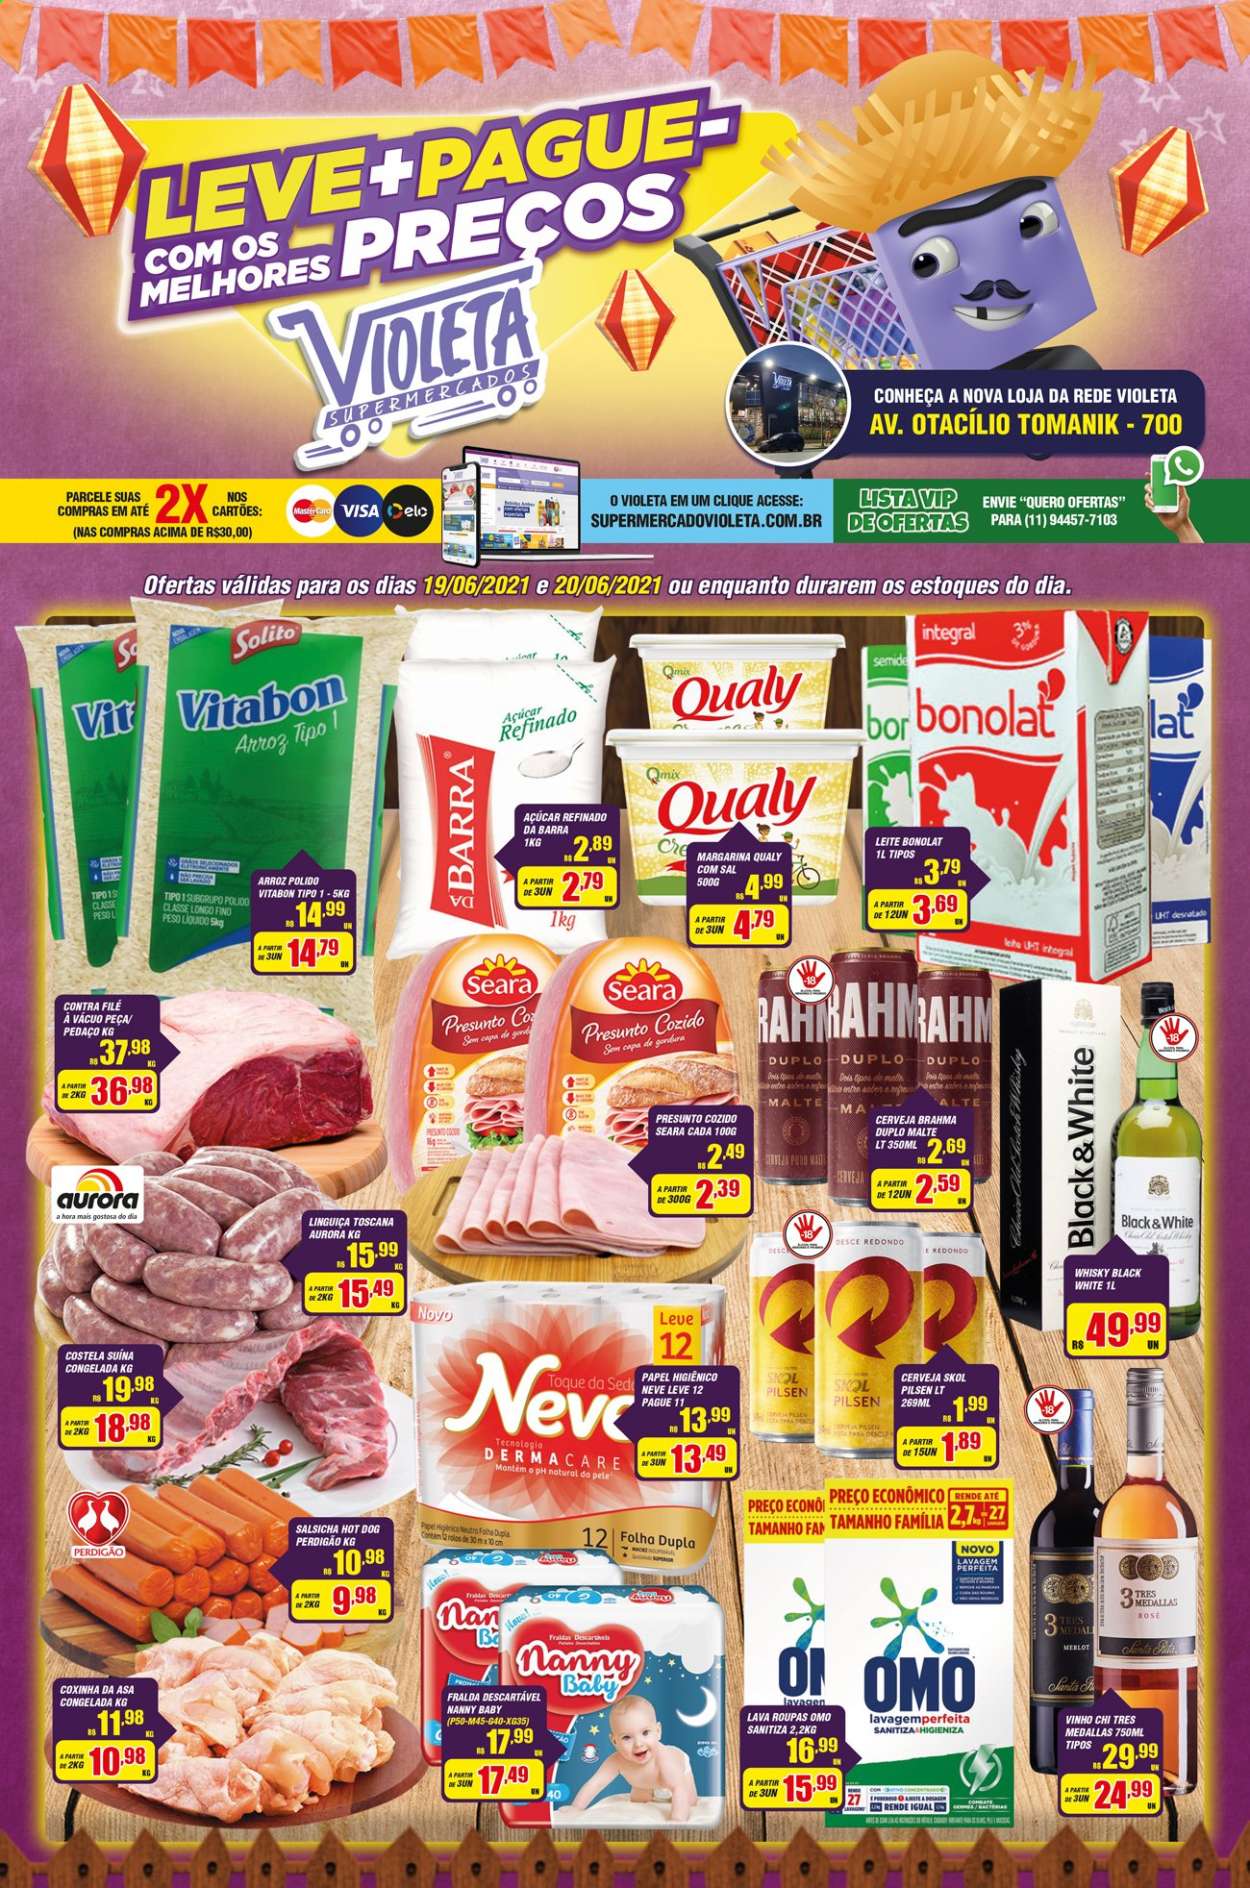 Encarte Supermercado Violeta  - 19.06.2021 - 20.06.2021.